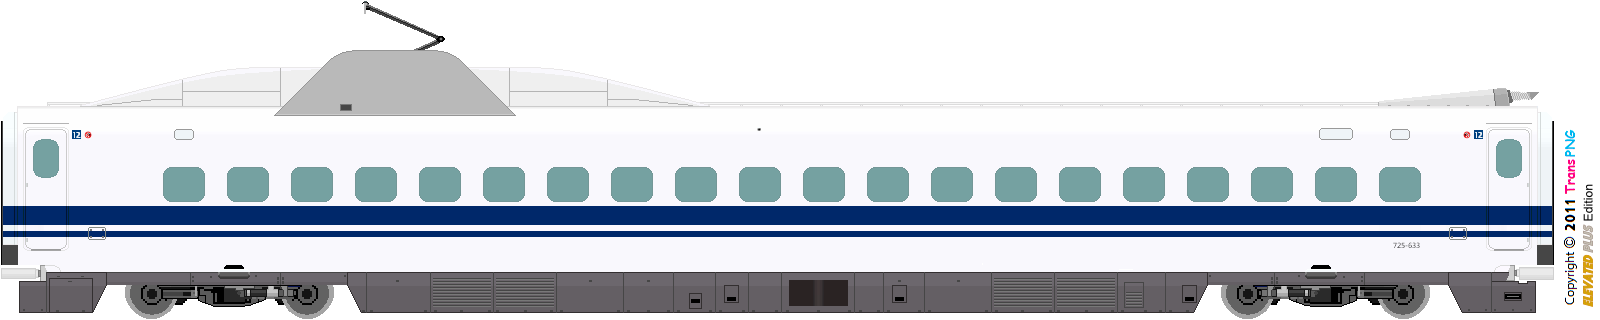 9010 - [9010] Central Japan Railway 52286607357_d9d21ab31a_o